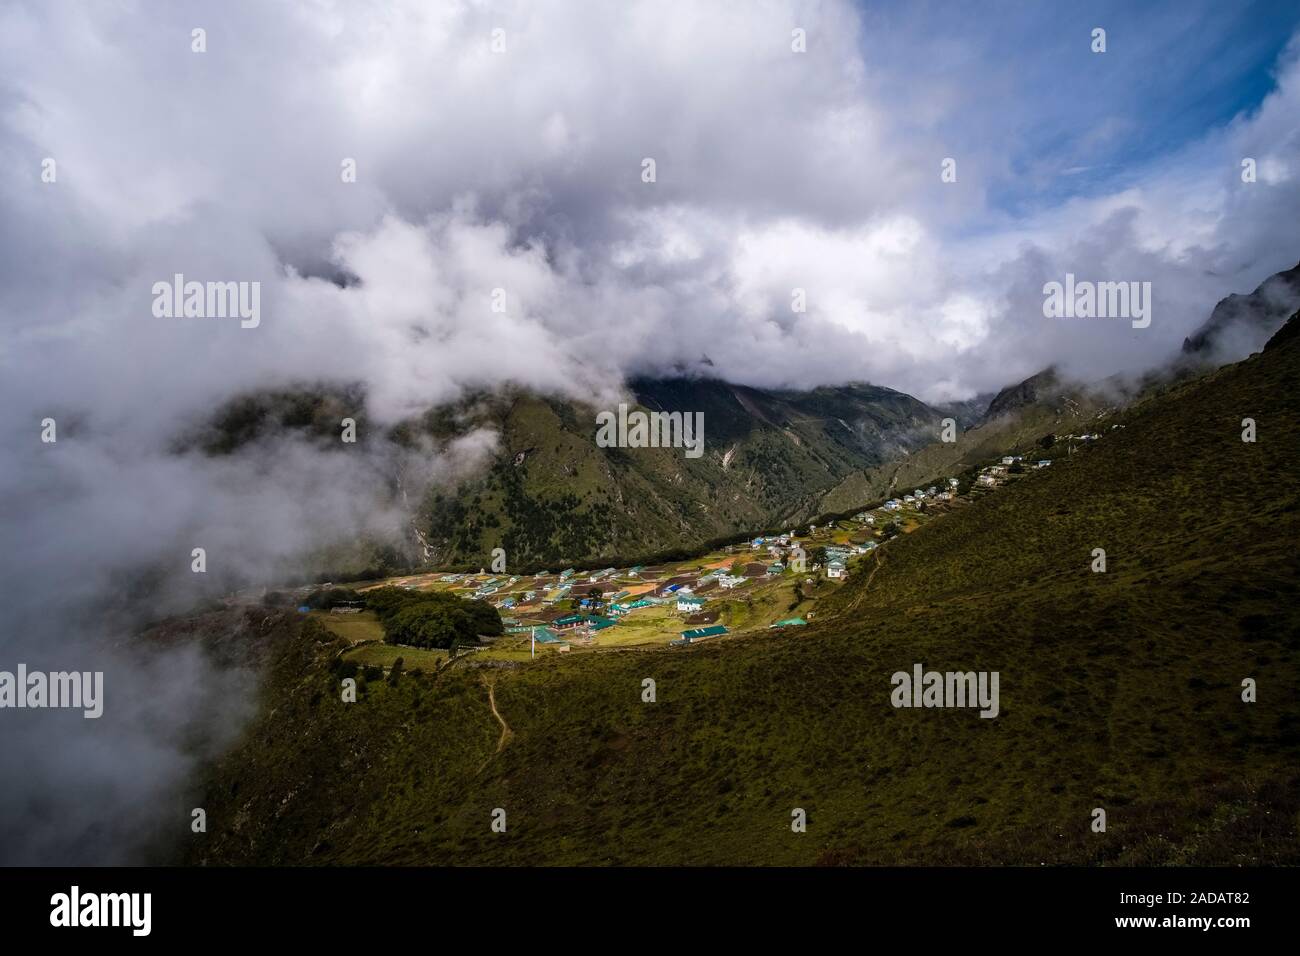 Vista aerea sul villaggio e campi circostanti, monsone di nuvole che si muovono in Foto Stock